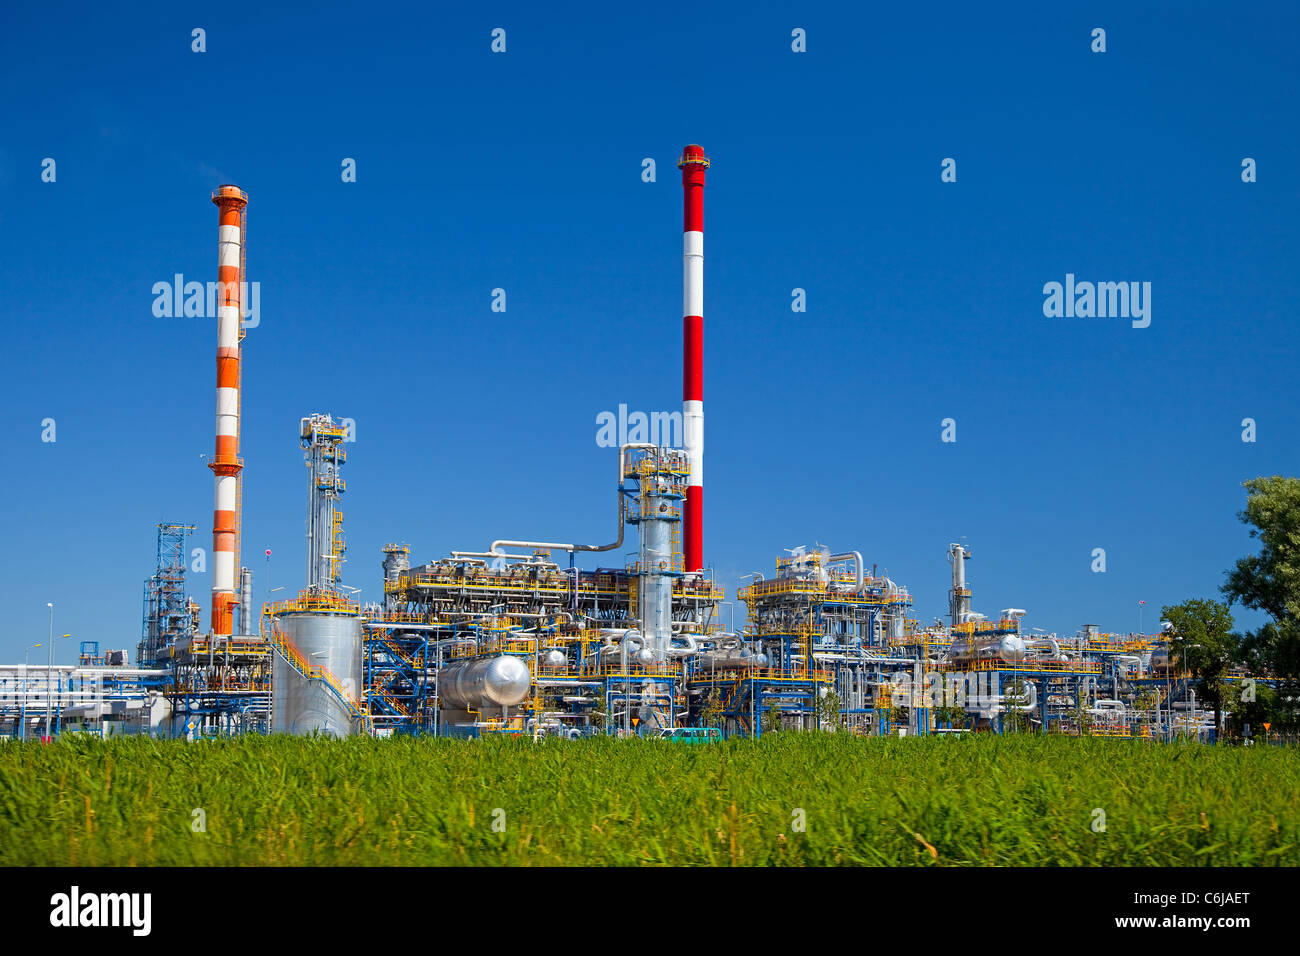 Öl-Raffinerie, Industrie-Anlage unter blauem Himmel. Stockfoto